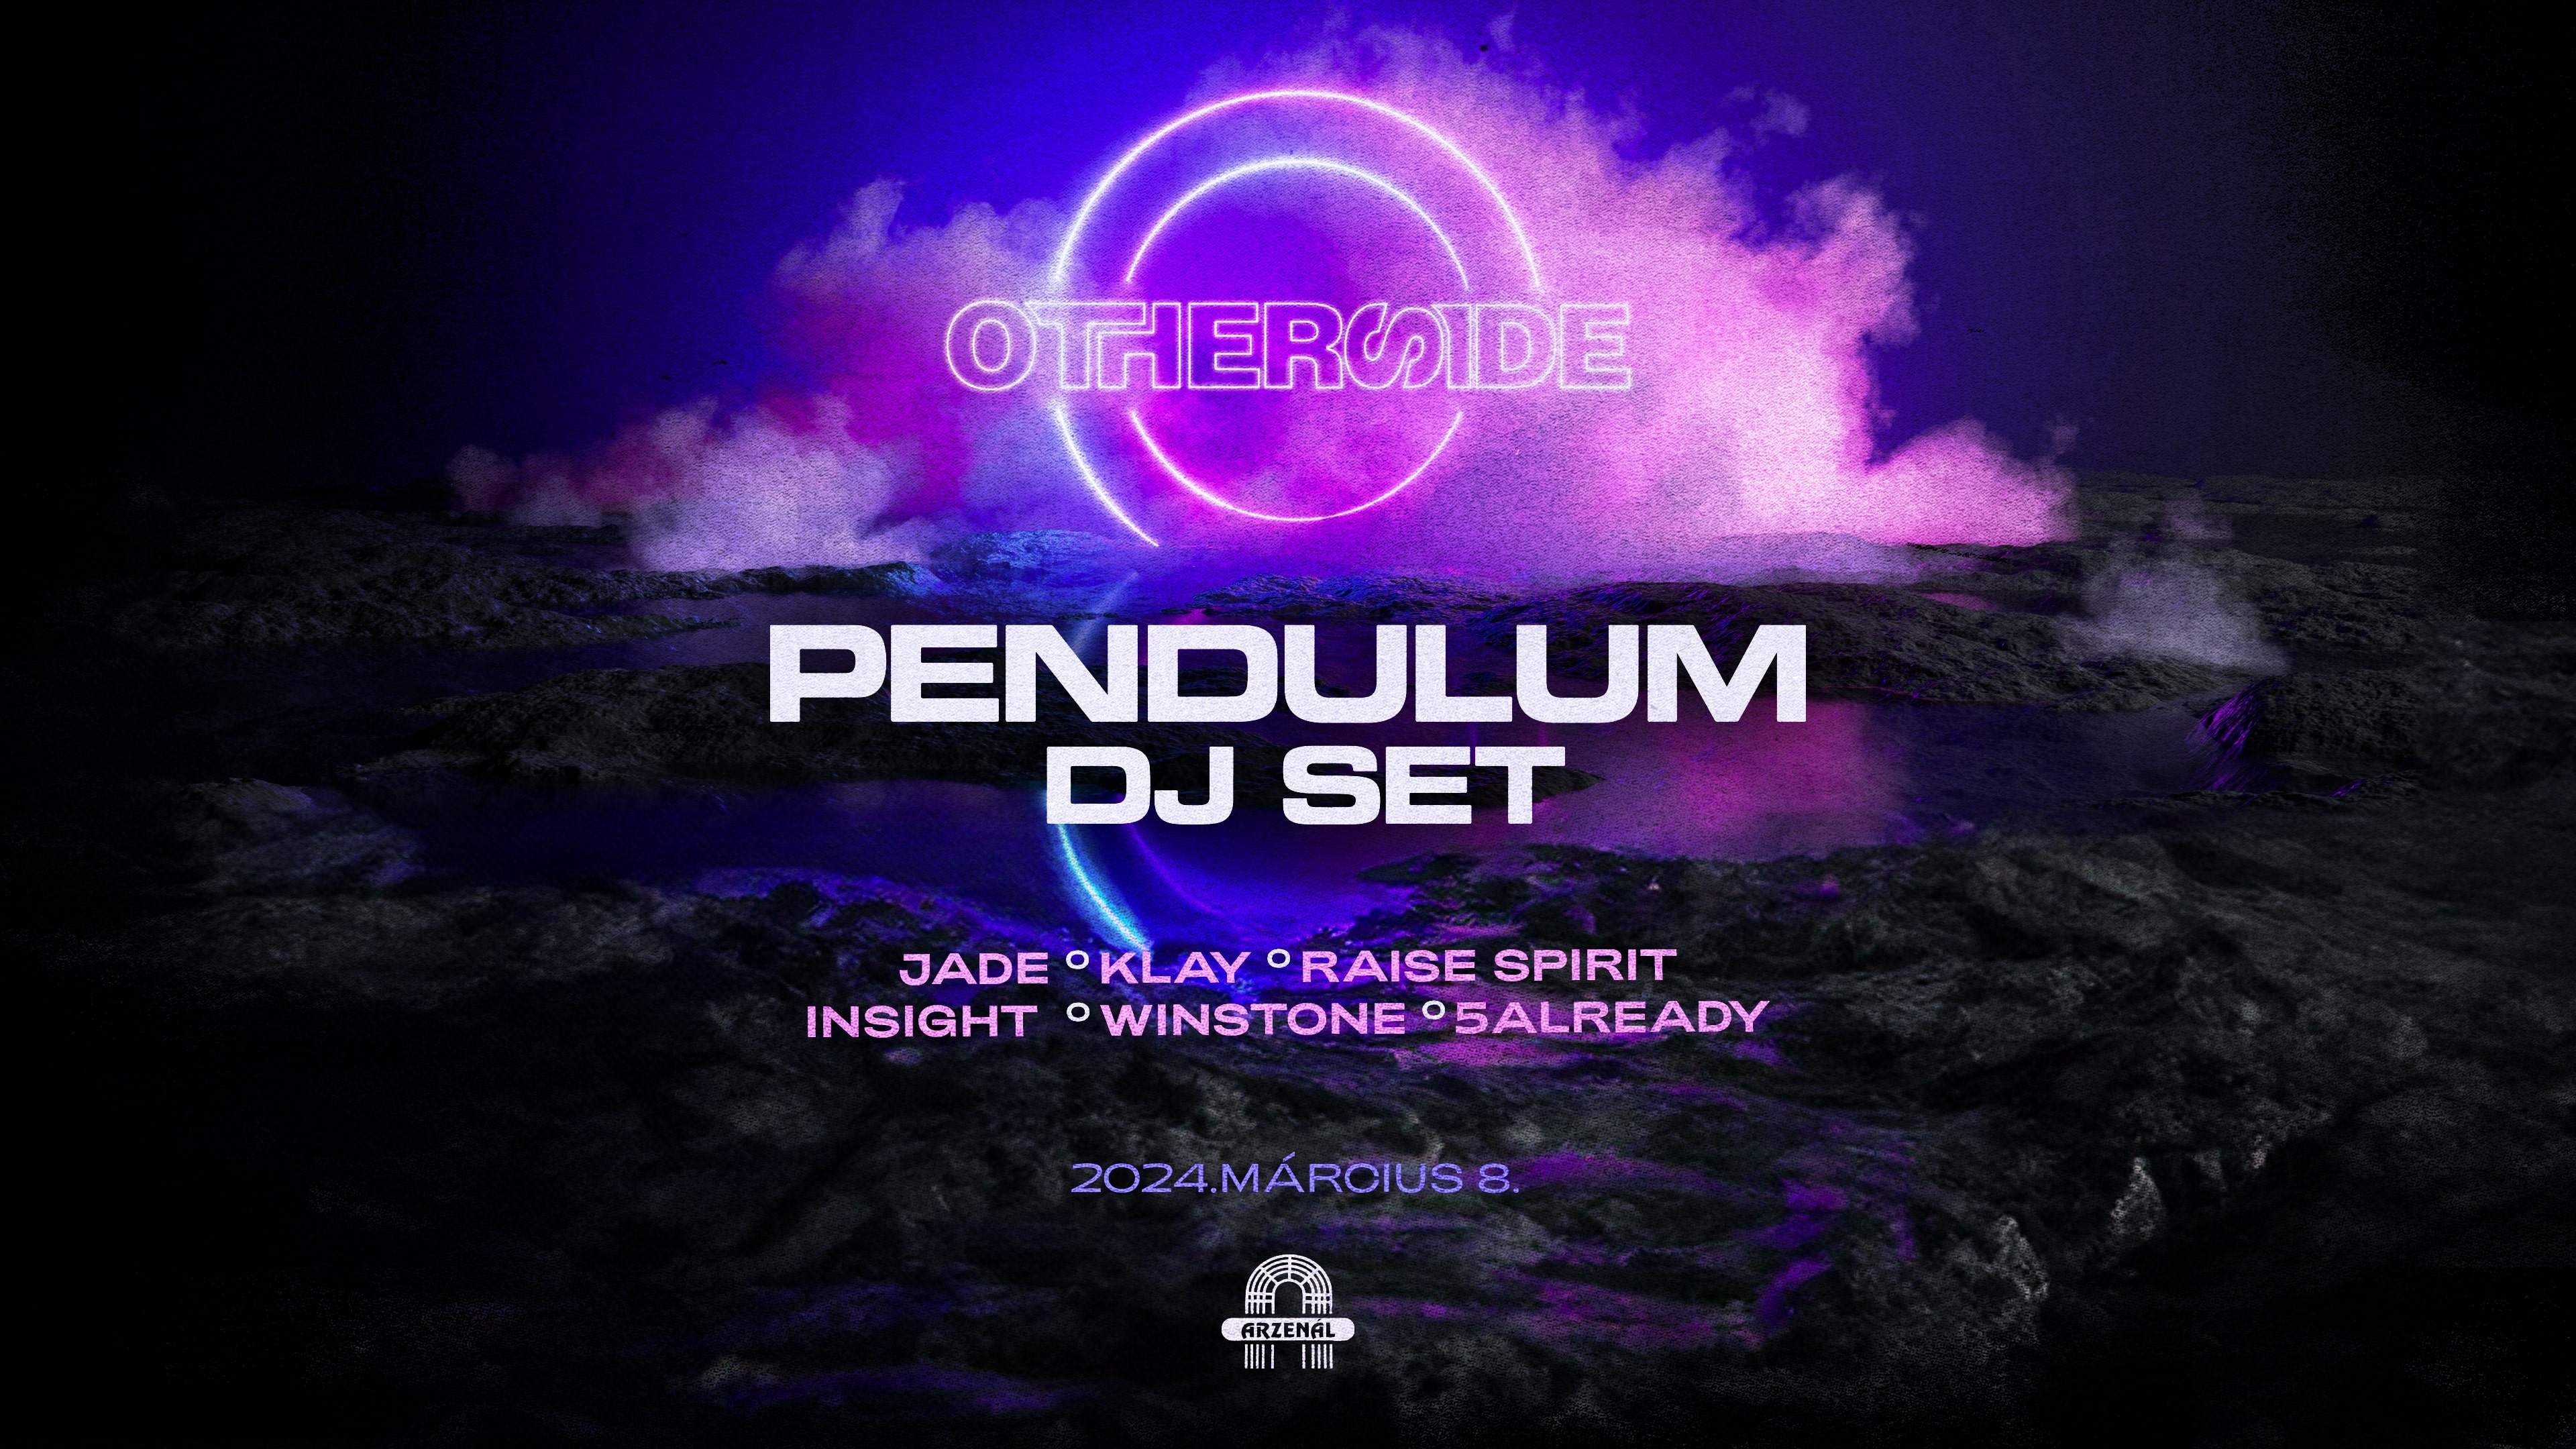 Otherside w_Pendulum (dj set) - フライヤー表